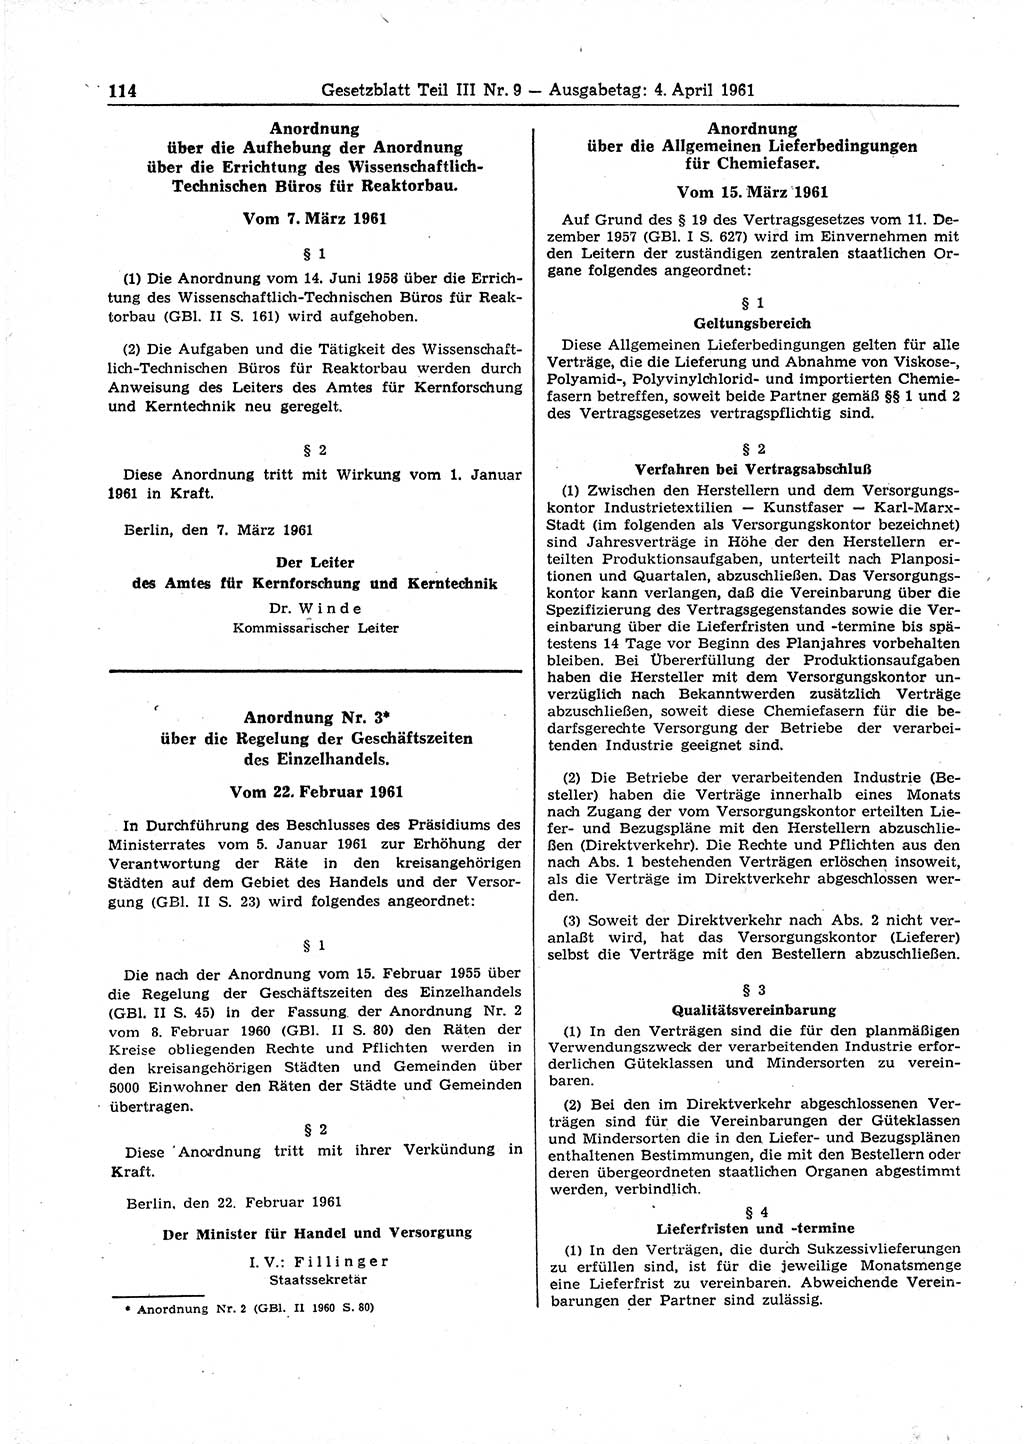 Gesetzblatt (GBl.) der Deutschen Demokratischen Republik (DDR) Teil ⅠⅠⅠ 1961, Seite 114 (GBl. DDR ⅠⅠⅠ 1961, S. 114)